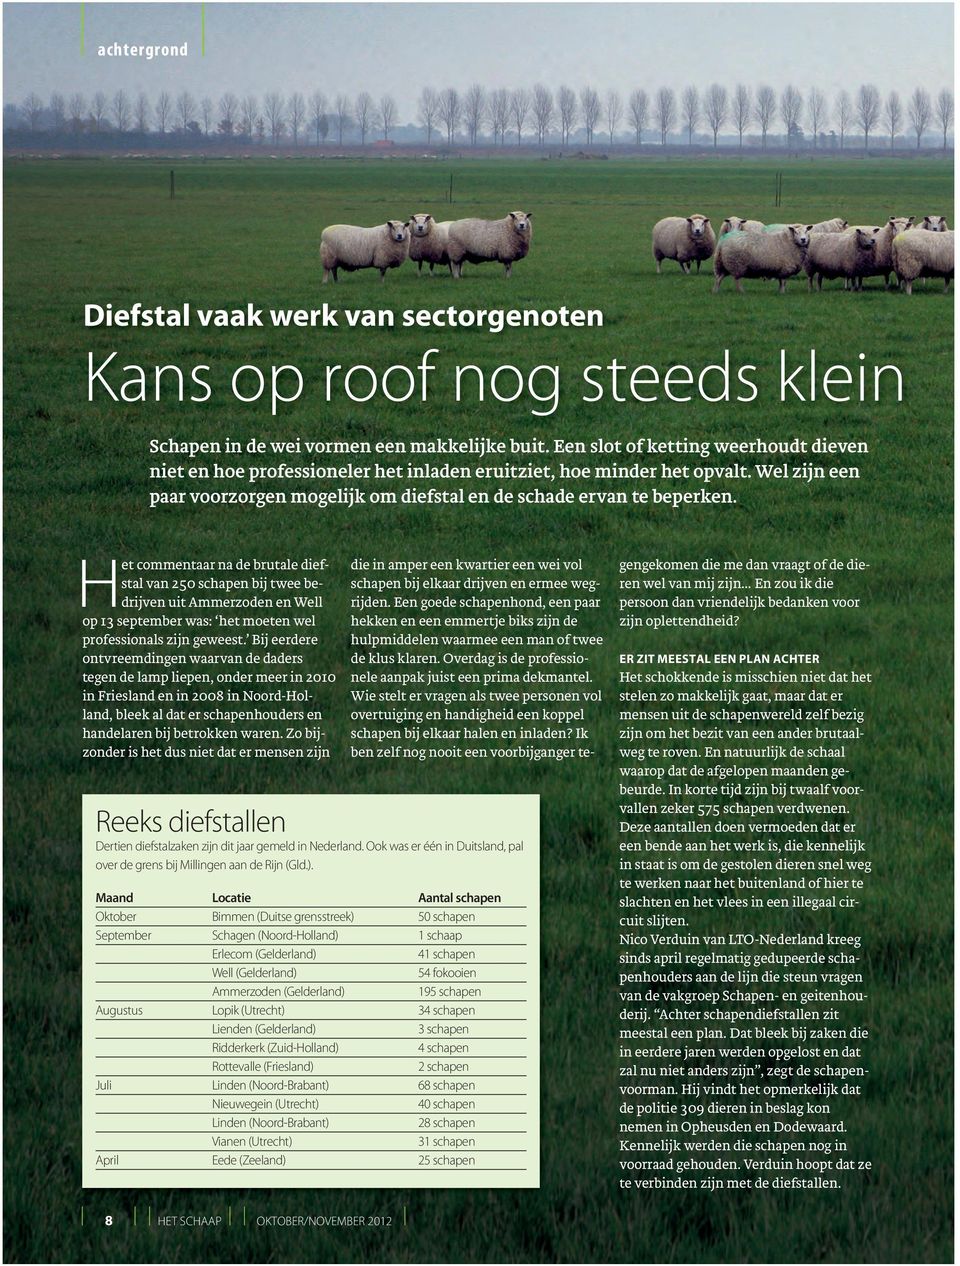 Het commentaar na de brutale diefstal van 250 schapen bij twee bedrijven uit Ammerzoden en Well op 13 september was: het moeten wel professionals zijn geweest.